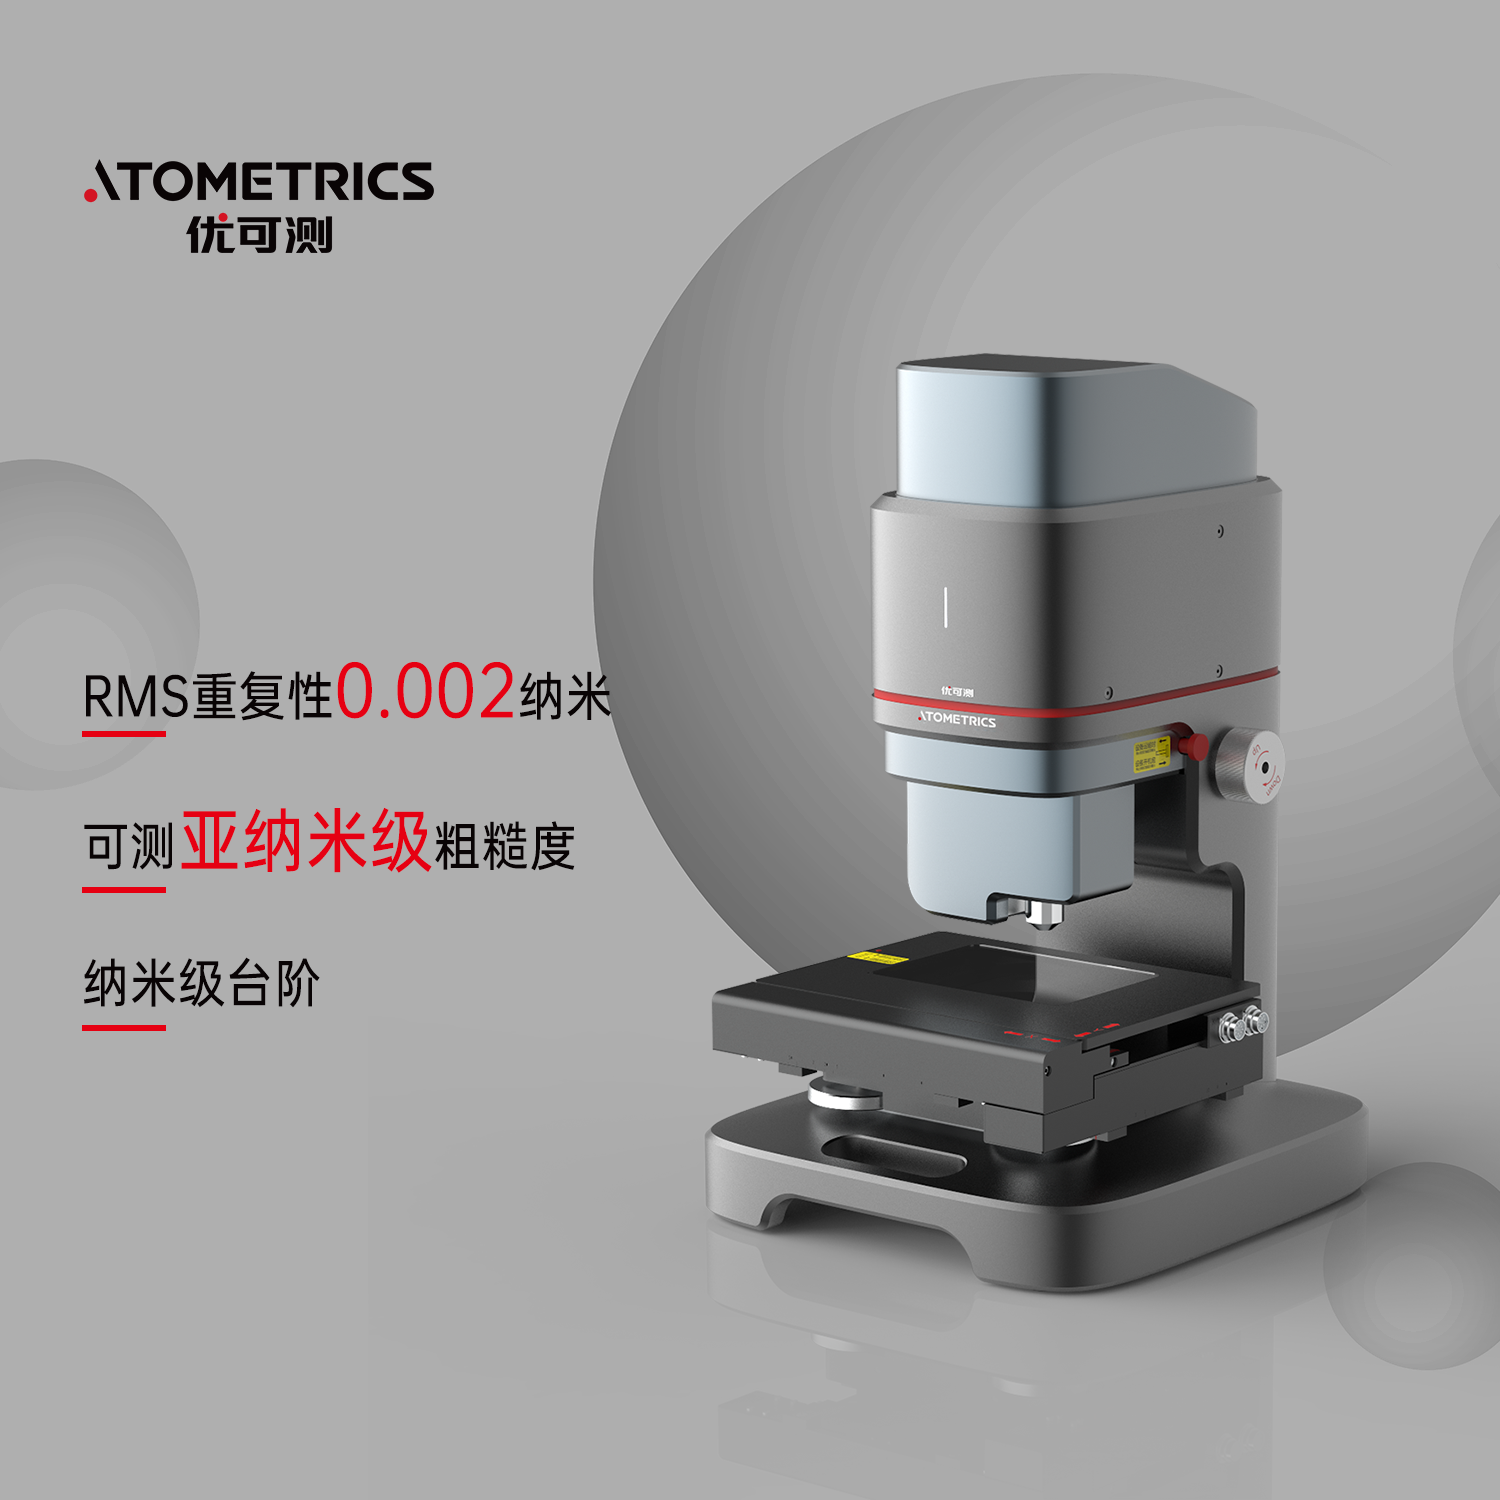 优可测Atometrics白光干涉仪AM-7000系列ER-230-纳米粗糙度形貌测量仪